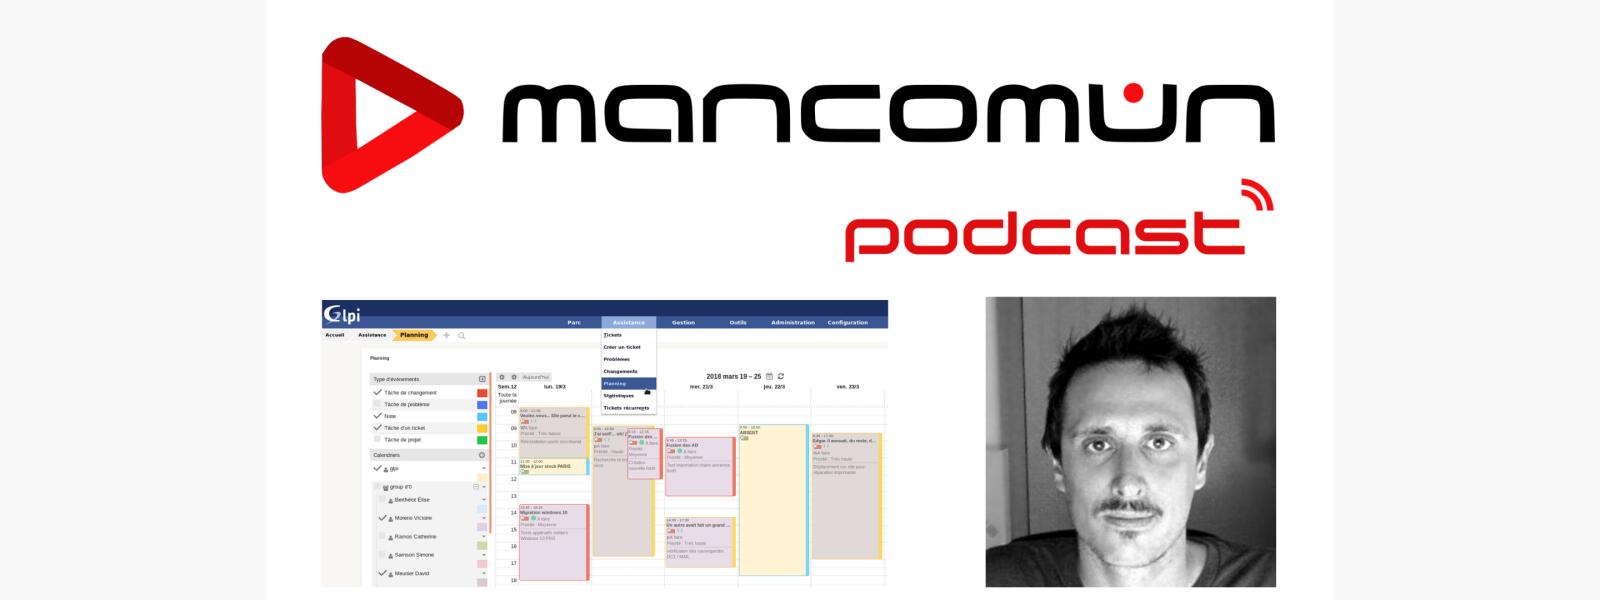 Mancomún Podcast: 73 – Casos de éxito no uso de ferramentas libres en administracións públicas, con Jordi Gervas